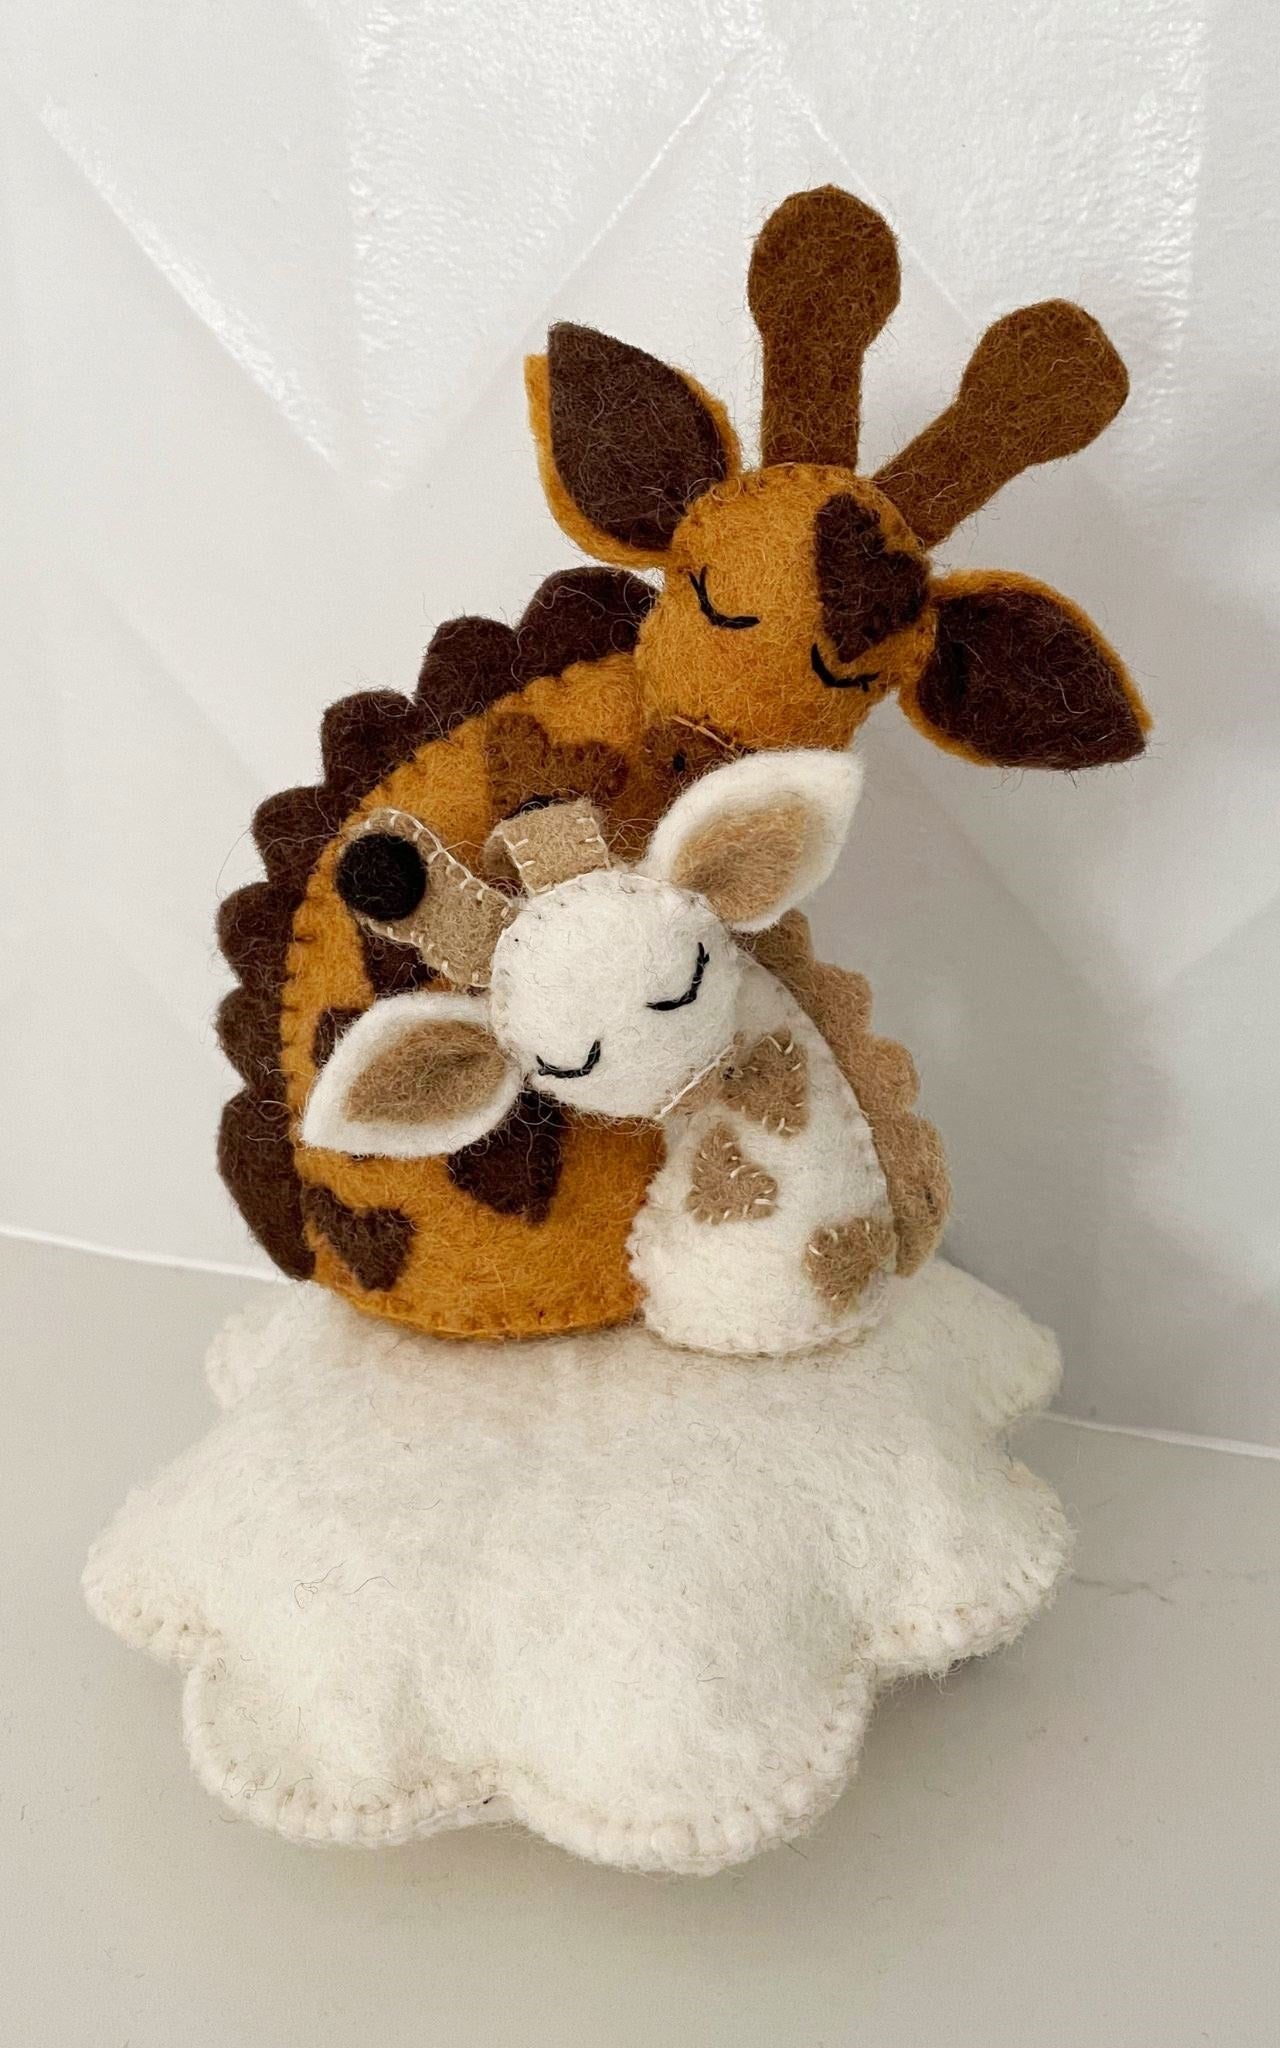 Surya Australia Ethical Wool Felt Baby Toy / Mobile - Sleeping Giraffes